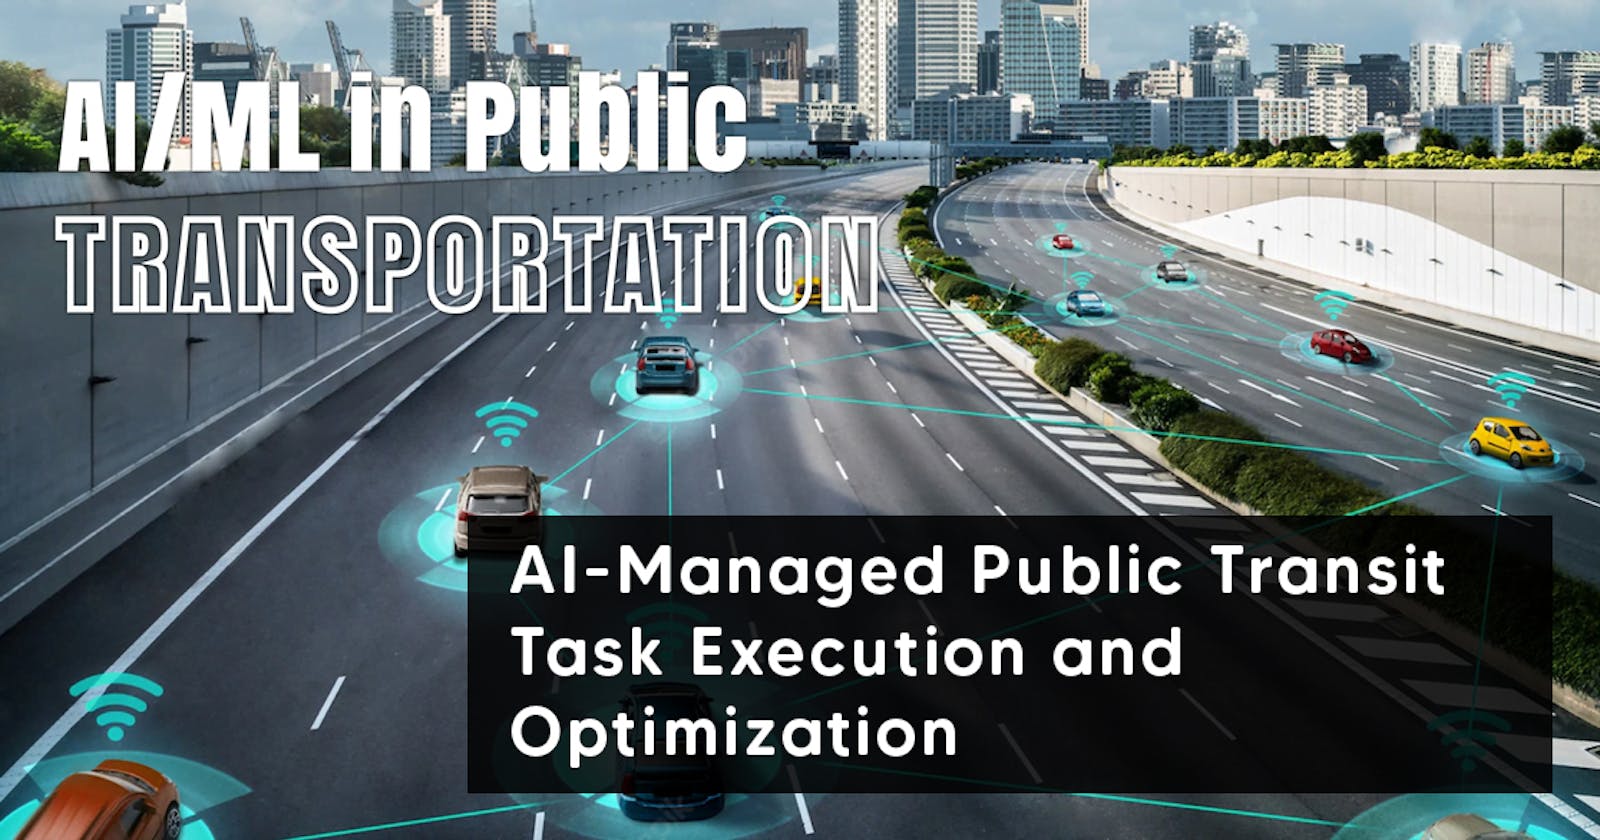 AI-Managed Public Transit: Task Execution and Optimization